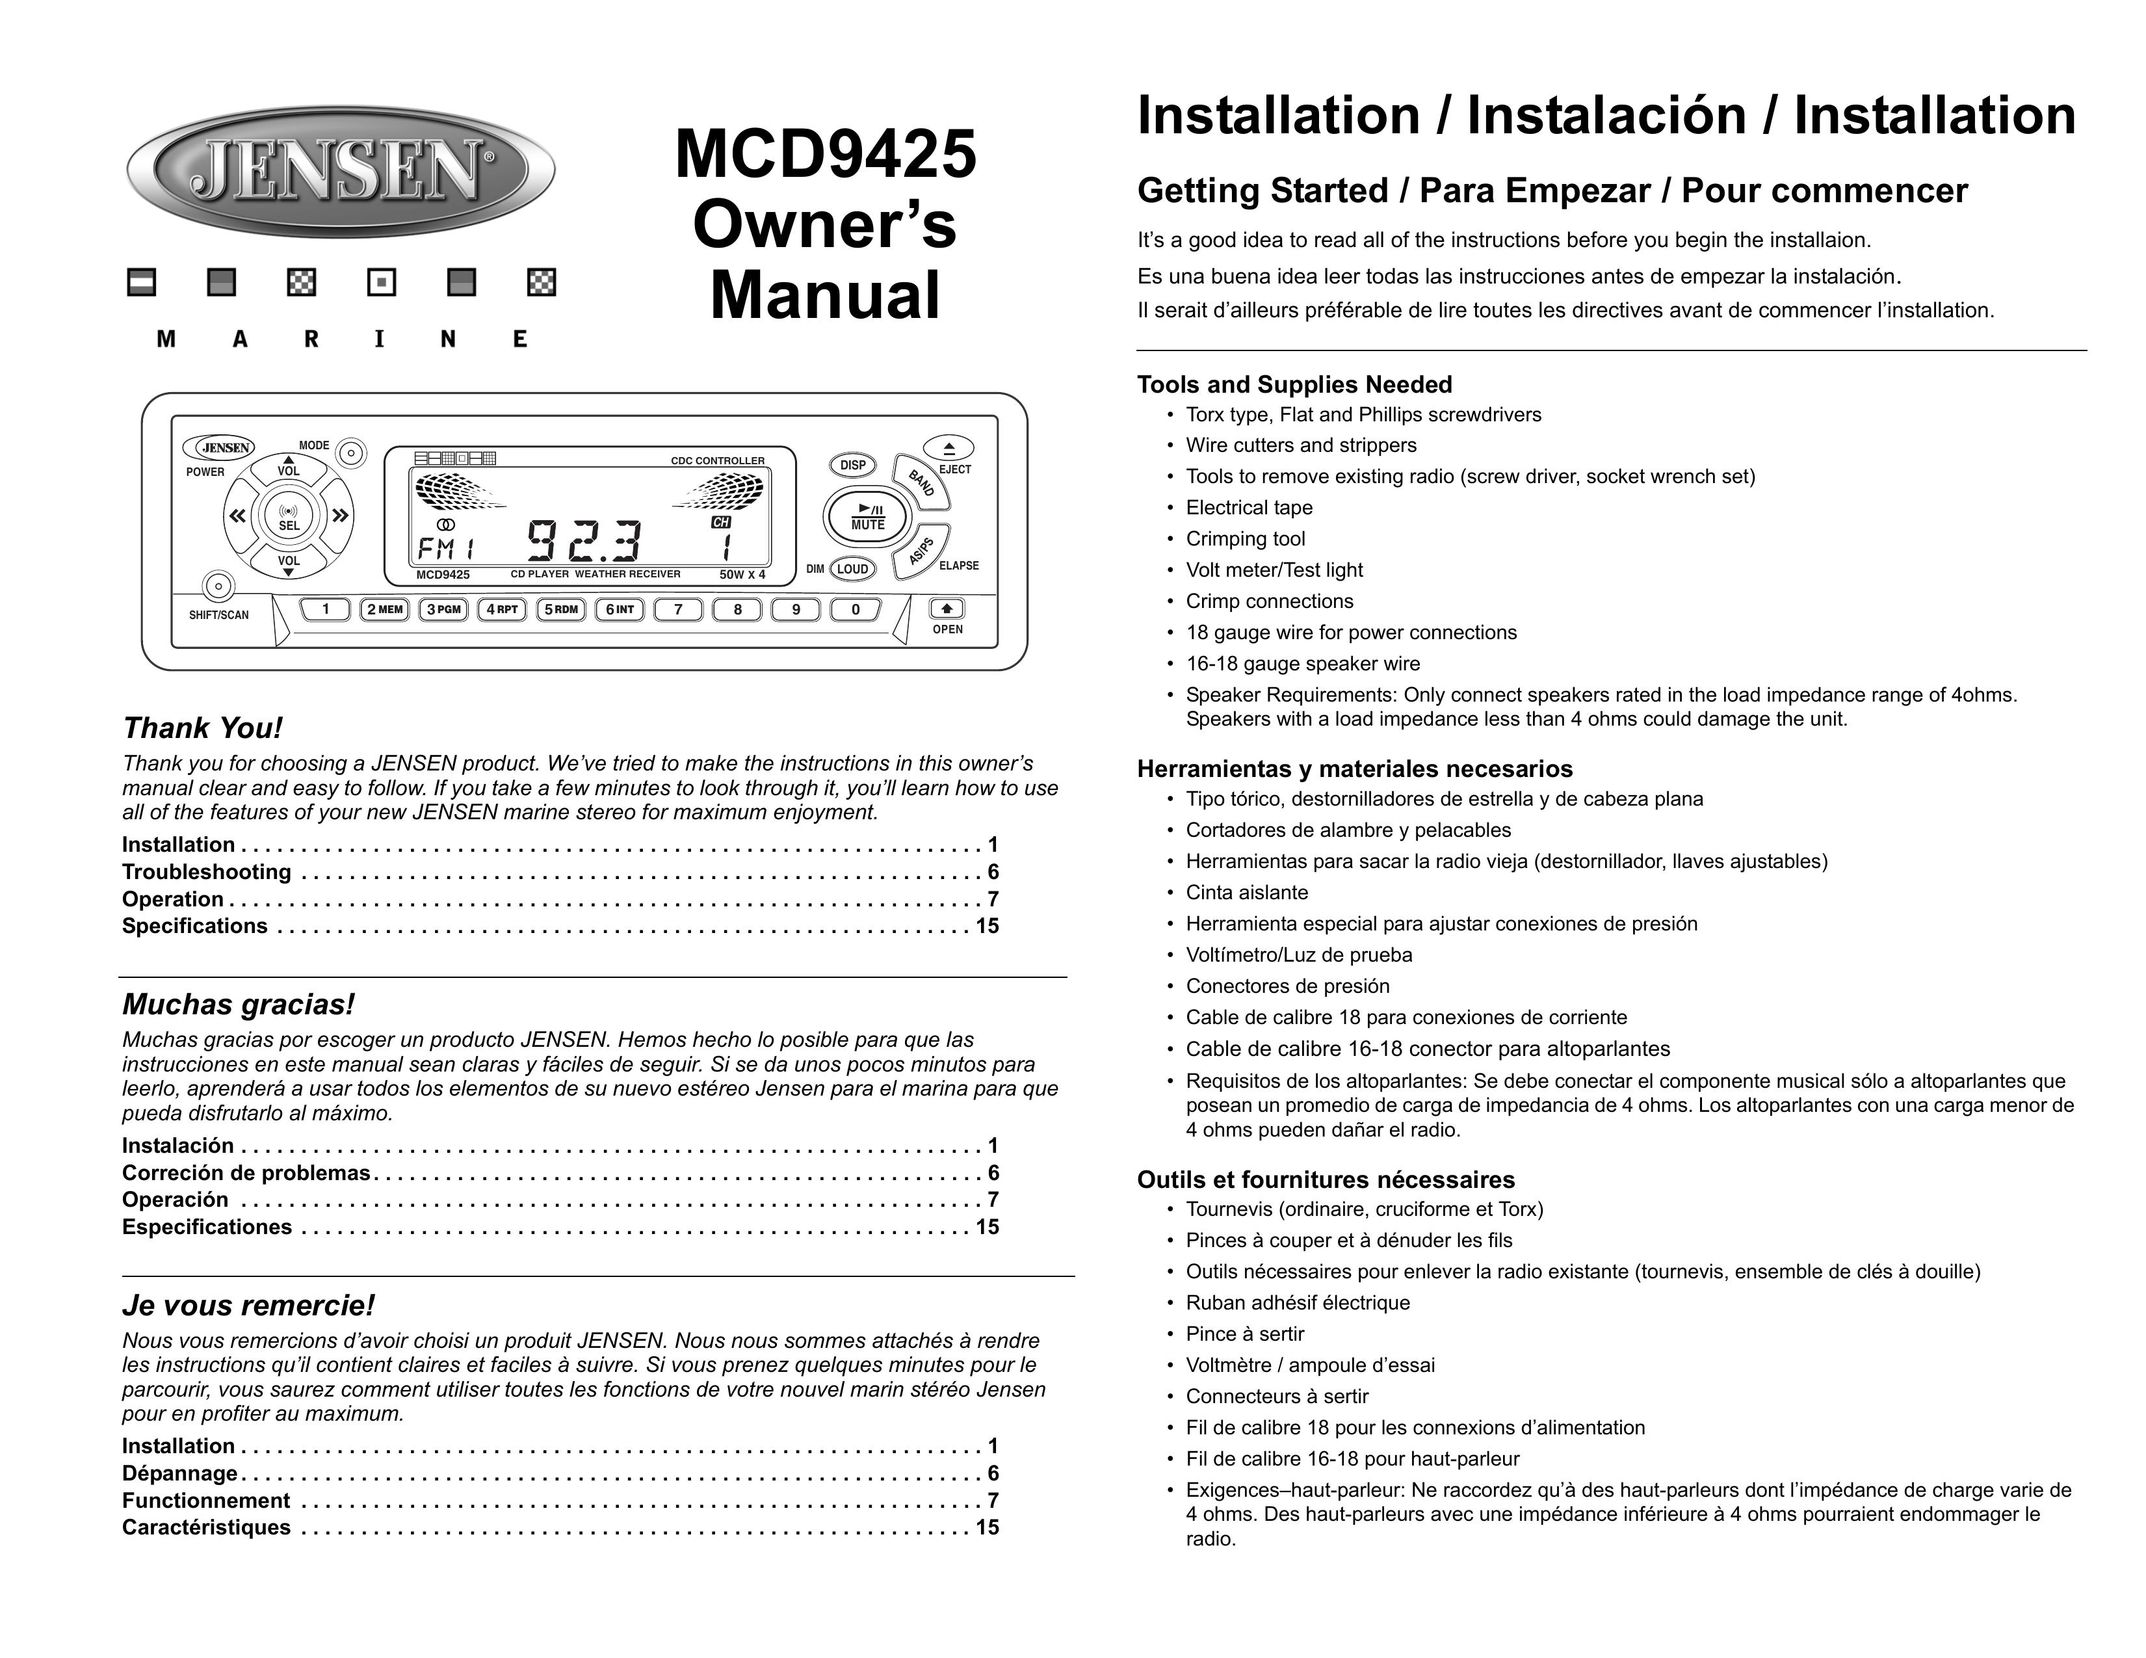 Jensen MCD9425 Car Stereo System User Manual